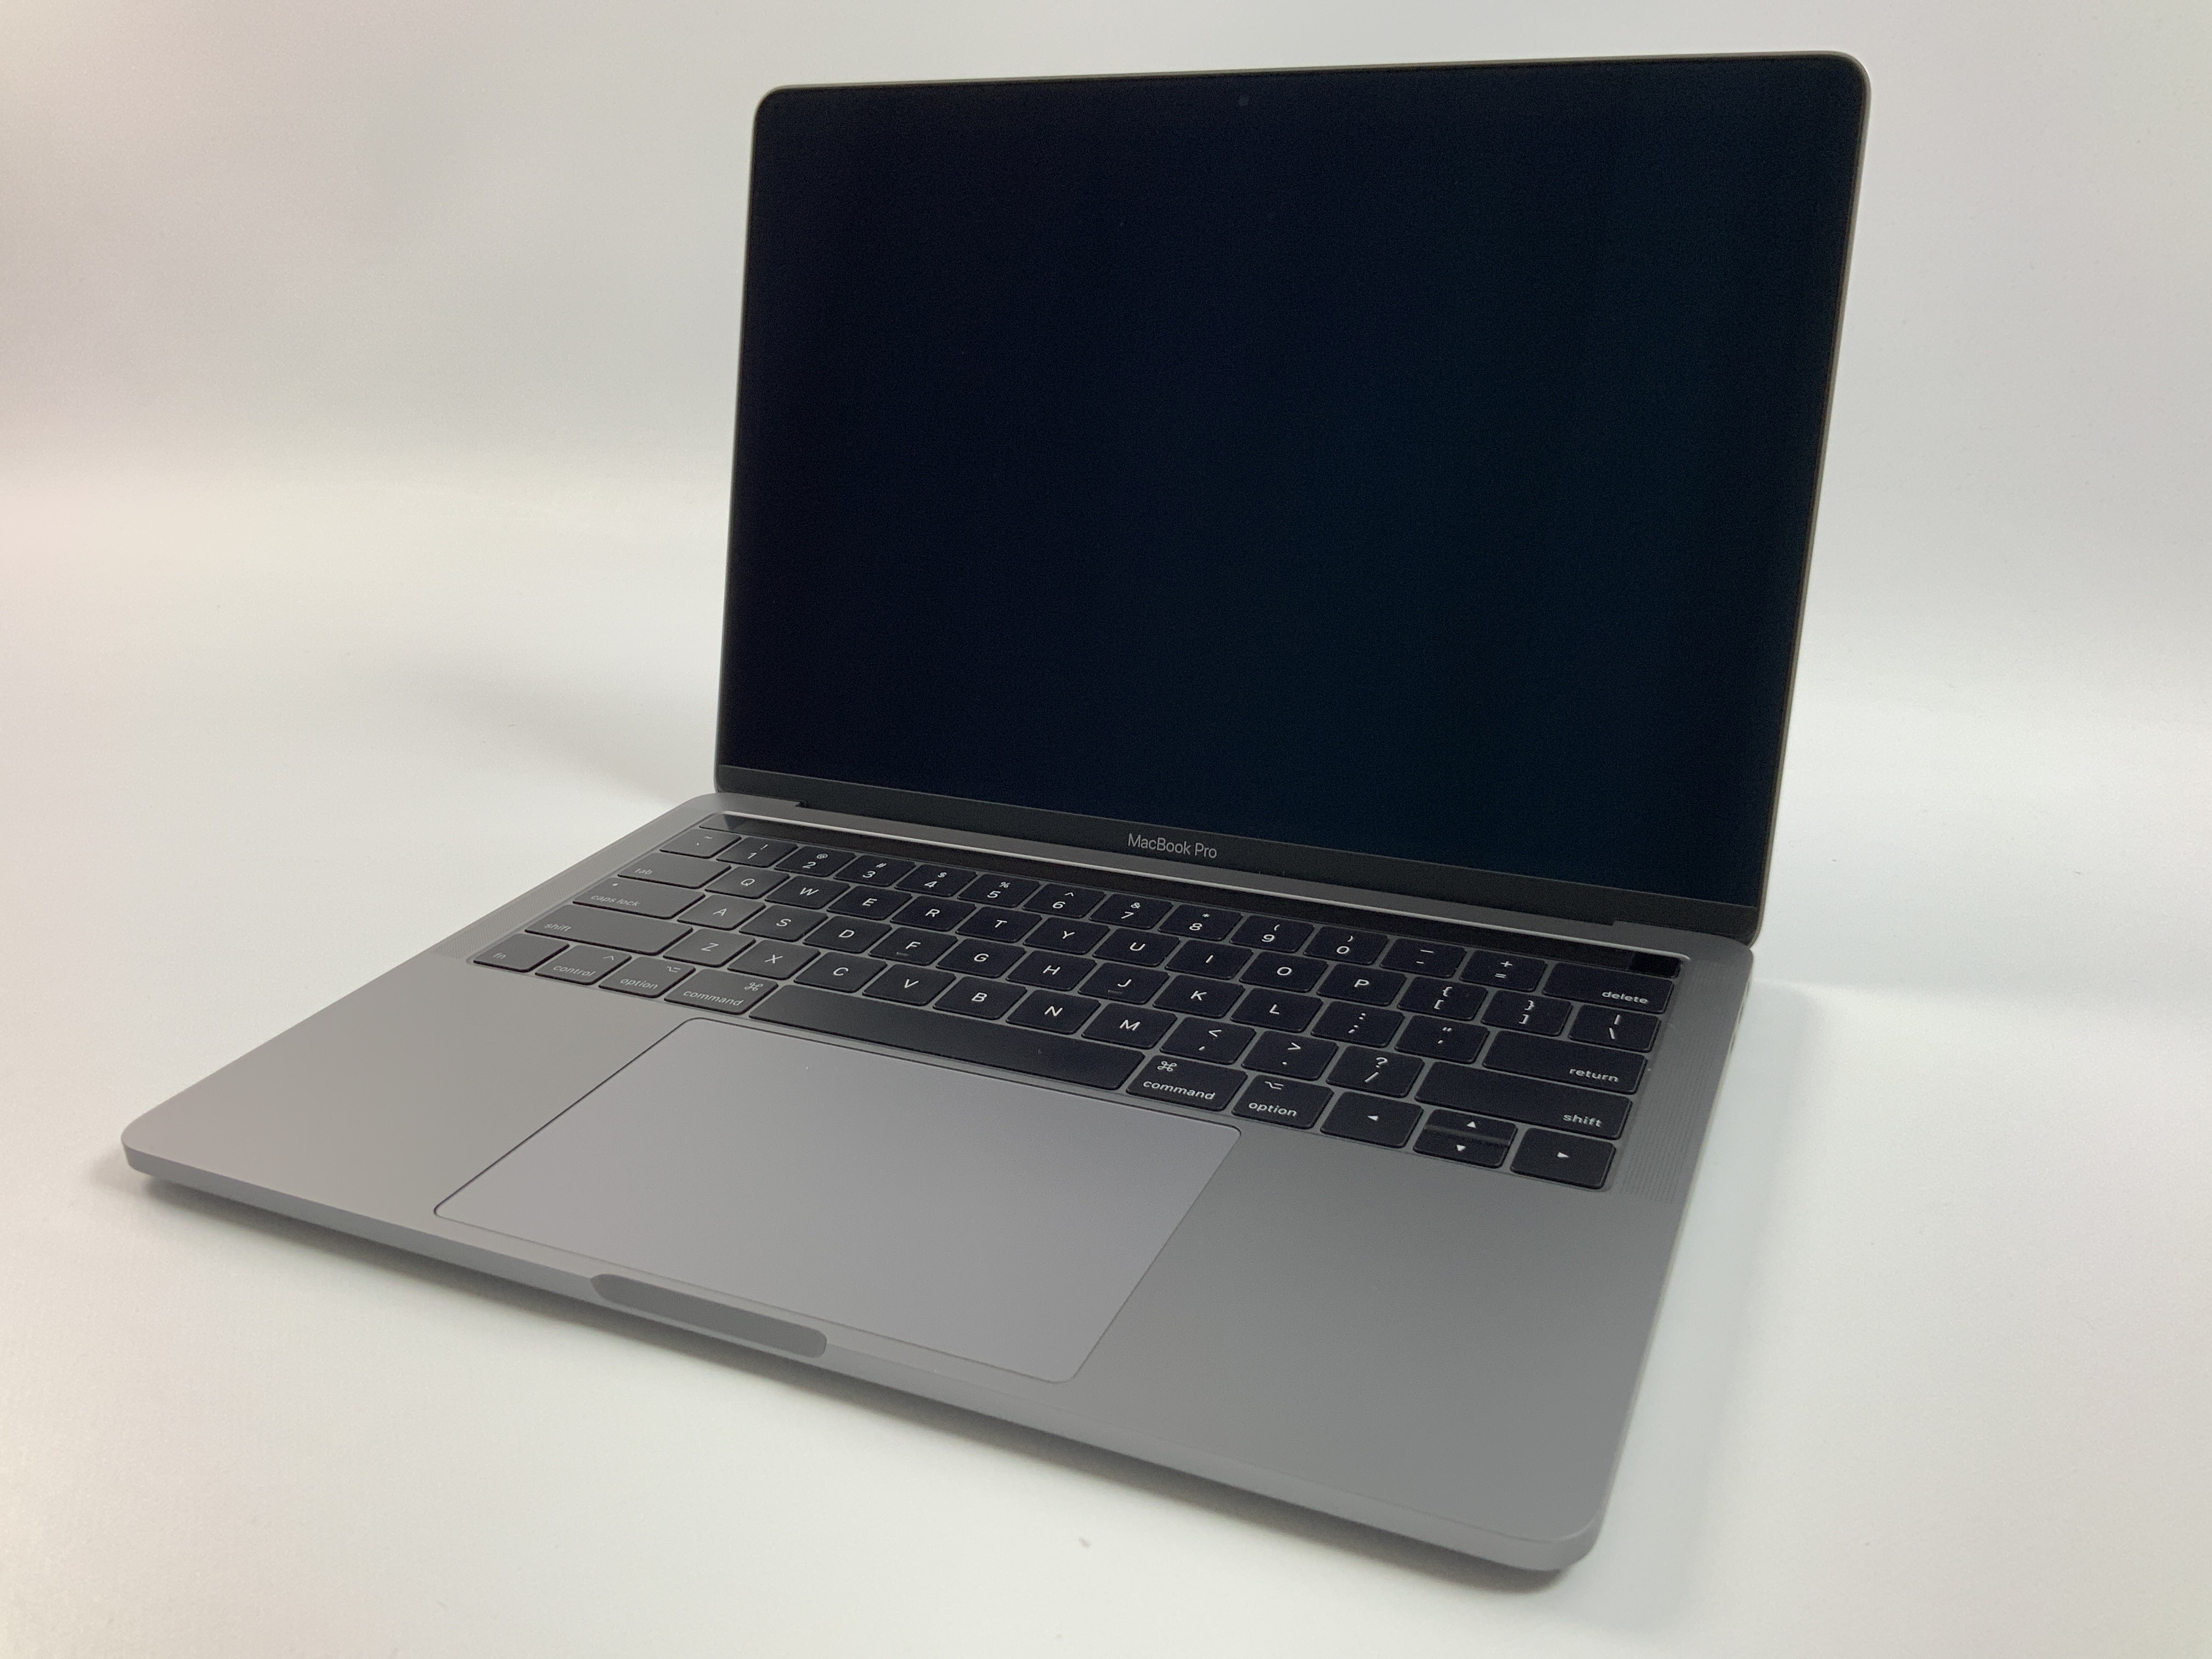 MacBook Pro 13" 4TBT Mid 2017 (Intel Core i5 3.1 GHz 8 GB RAM 512 GB SSD), Space Gray, Intel Core i5 3.1 GHz, 8 GB RAM, 512 GB SSD, imagen 1